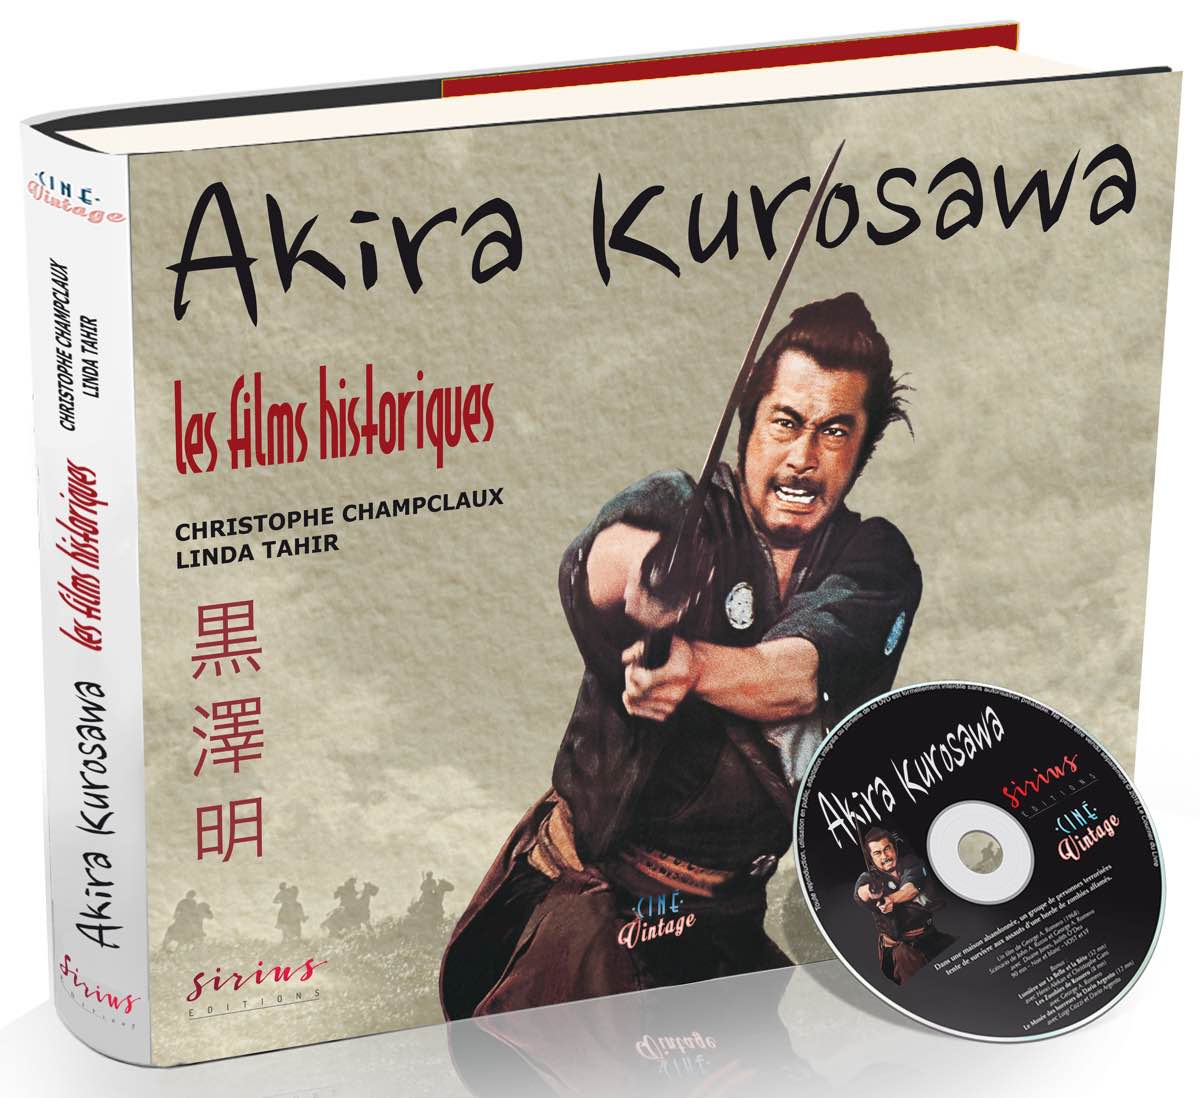 Akira Kurosawa, les films historiques